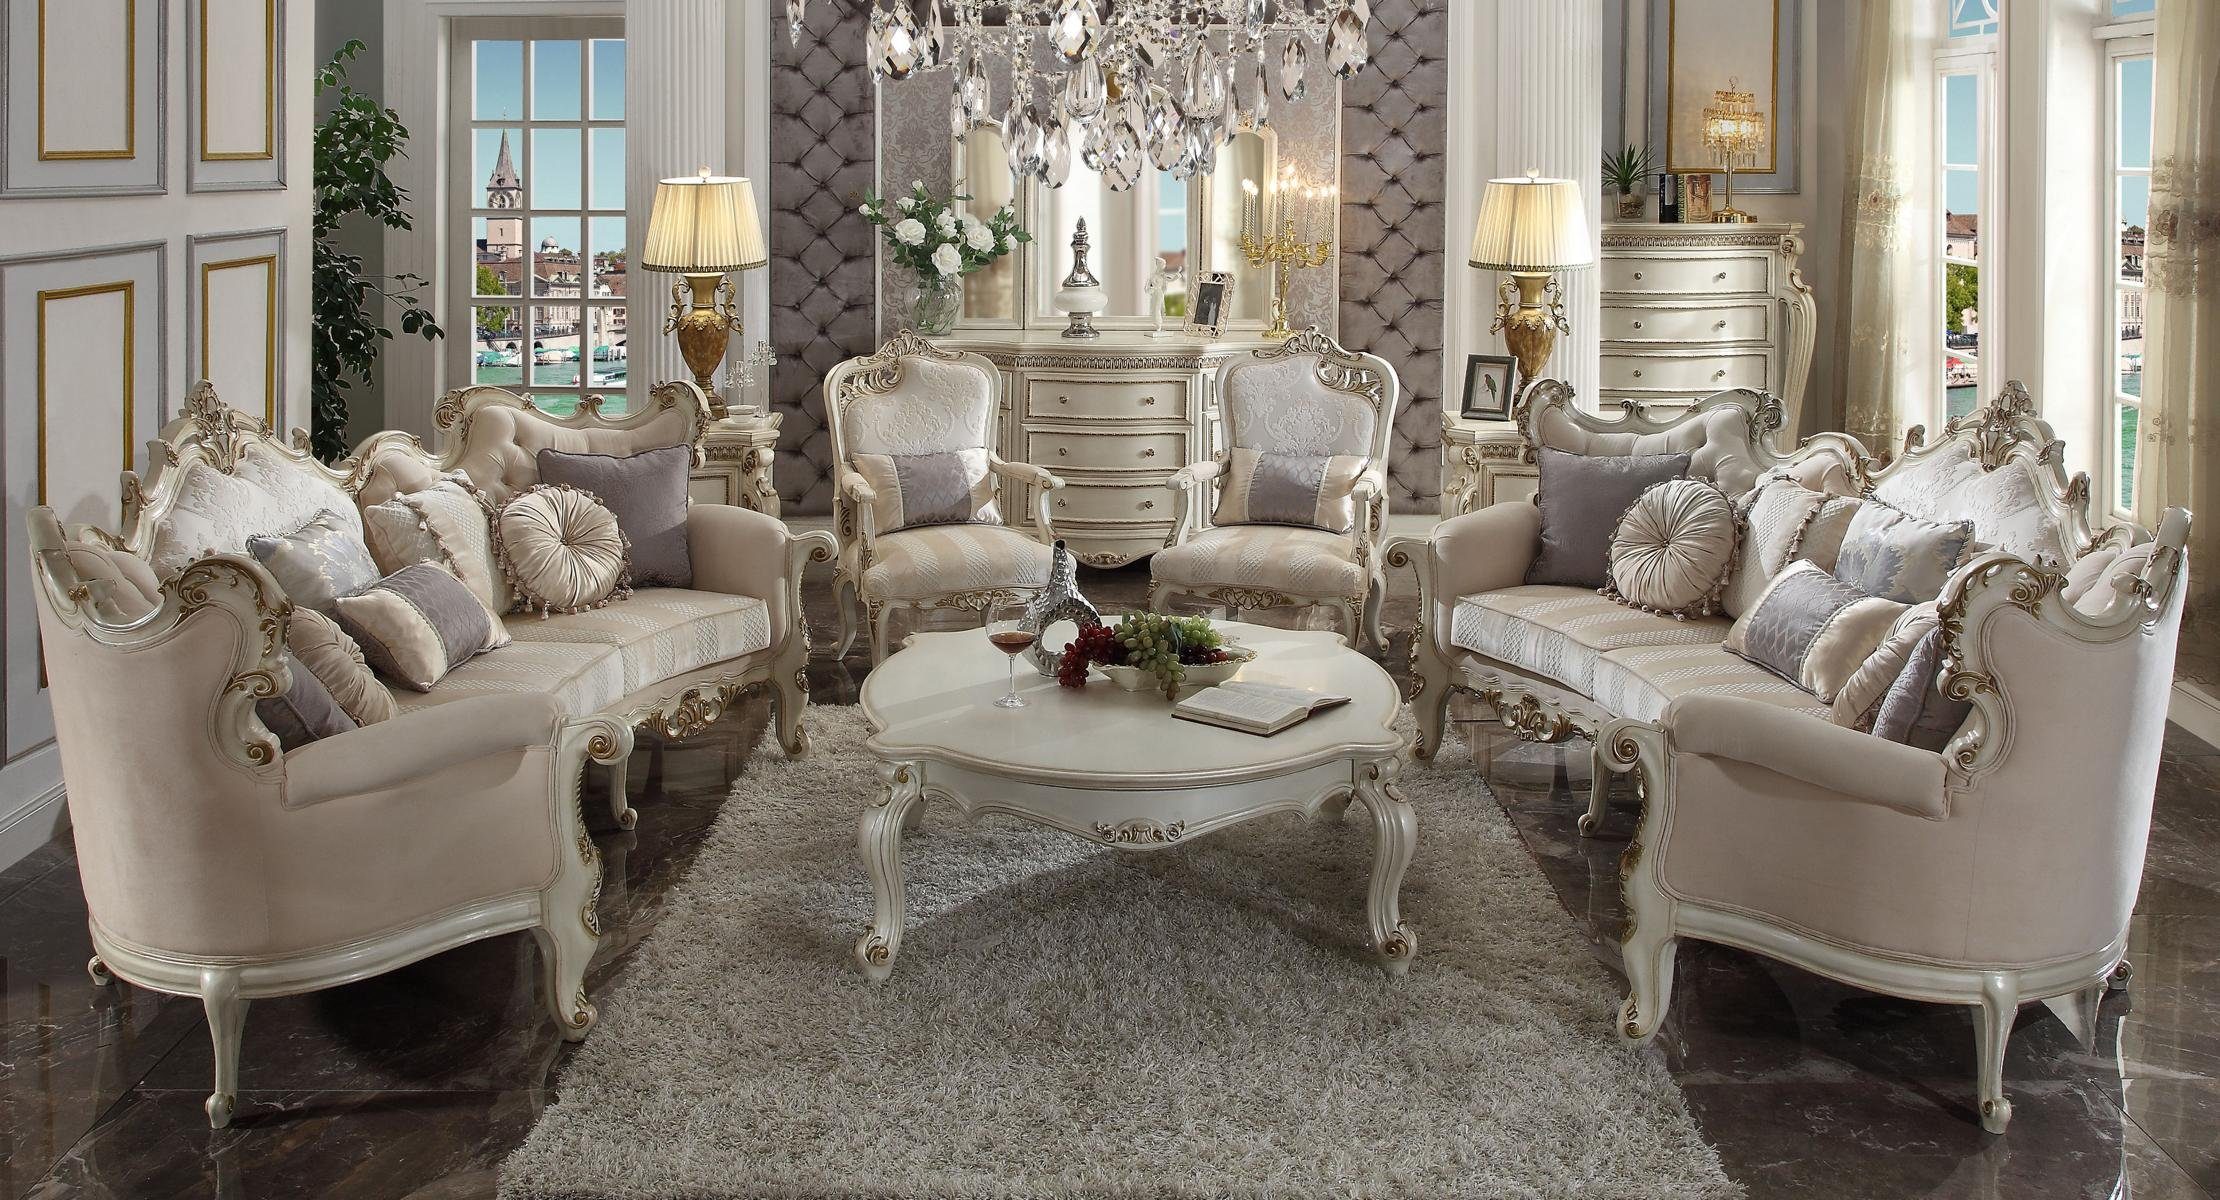 JVmoebel Wohnzimmer-Set, Luxus Möbel Sofagarnitur Couch Sofa Polster 4+4+1+1 Sitzer